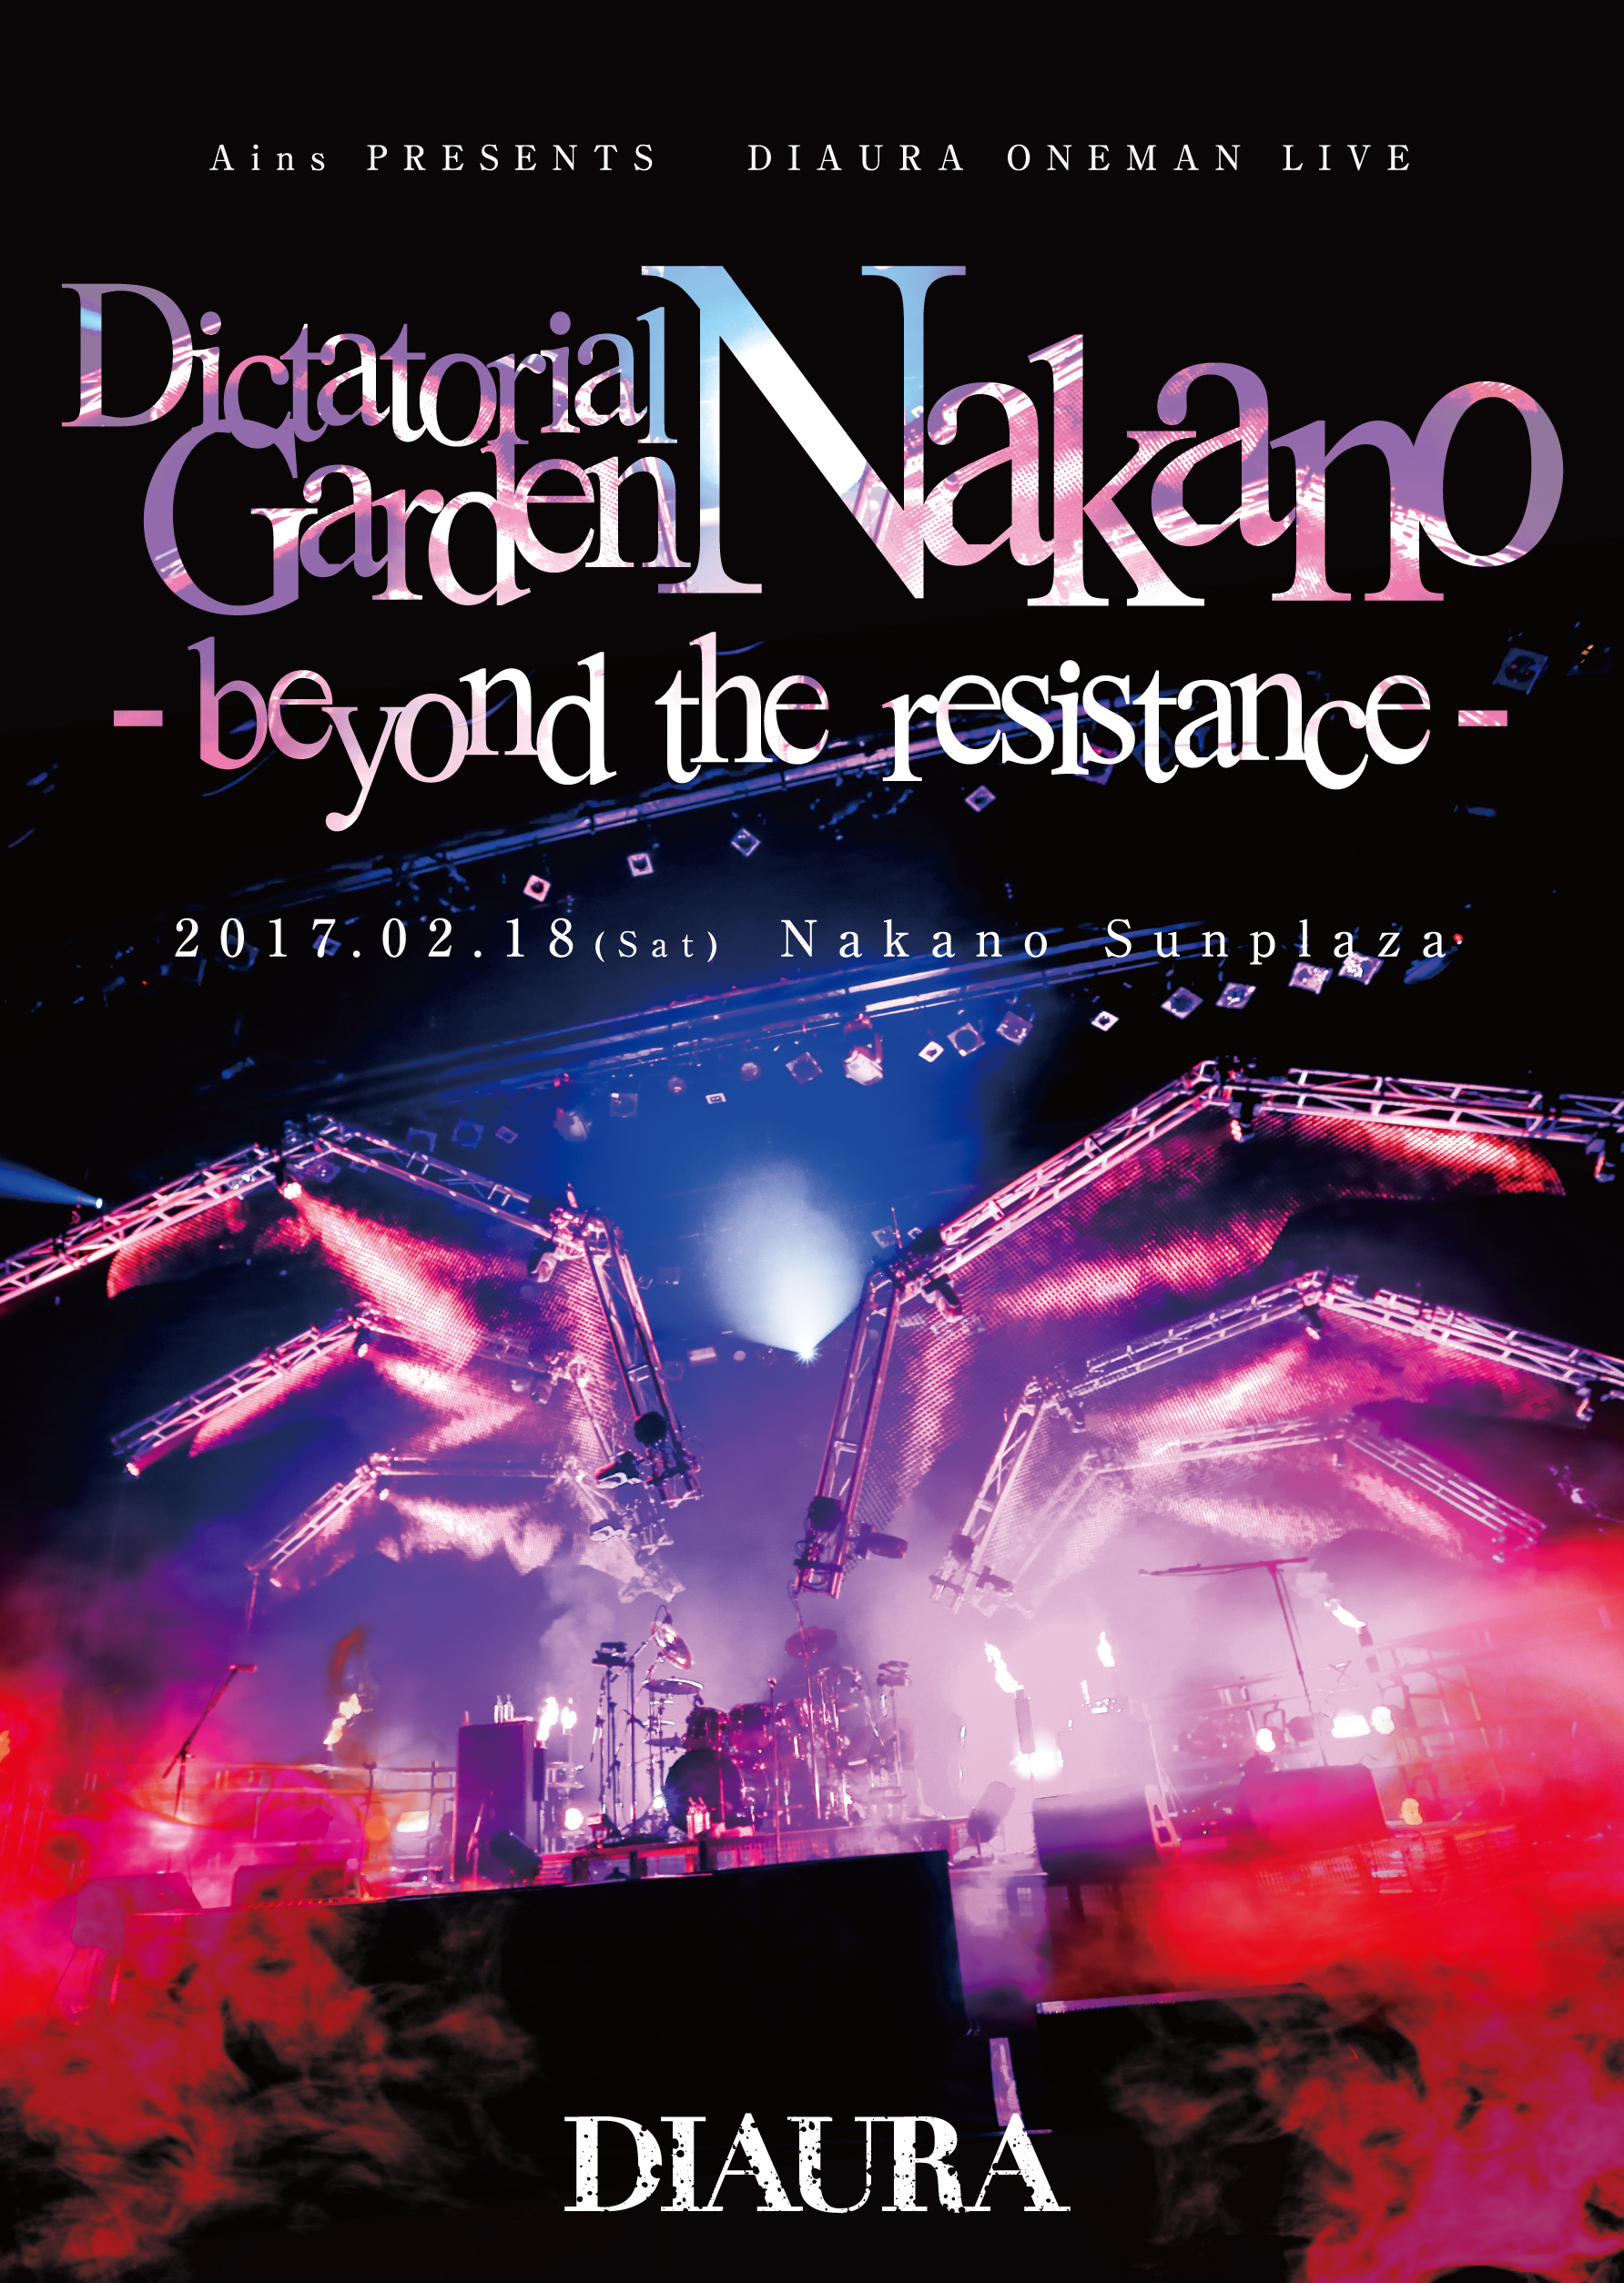 ディオーラ の DVD Ains PRESENTS DIAURA ONEMAN LIVE「Dictatorial Garden Nakano-beyond the resistance-」2017.02.18(Sat)Nakano Sunplaza